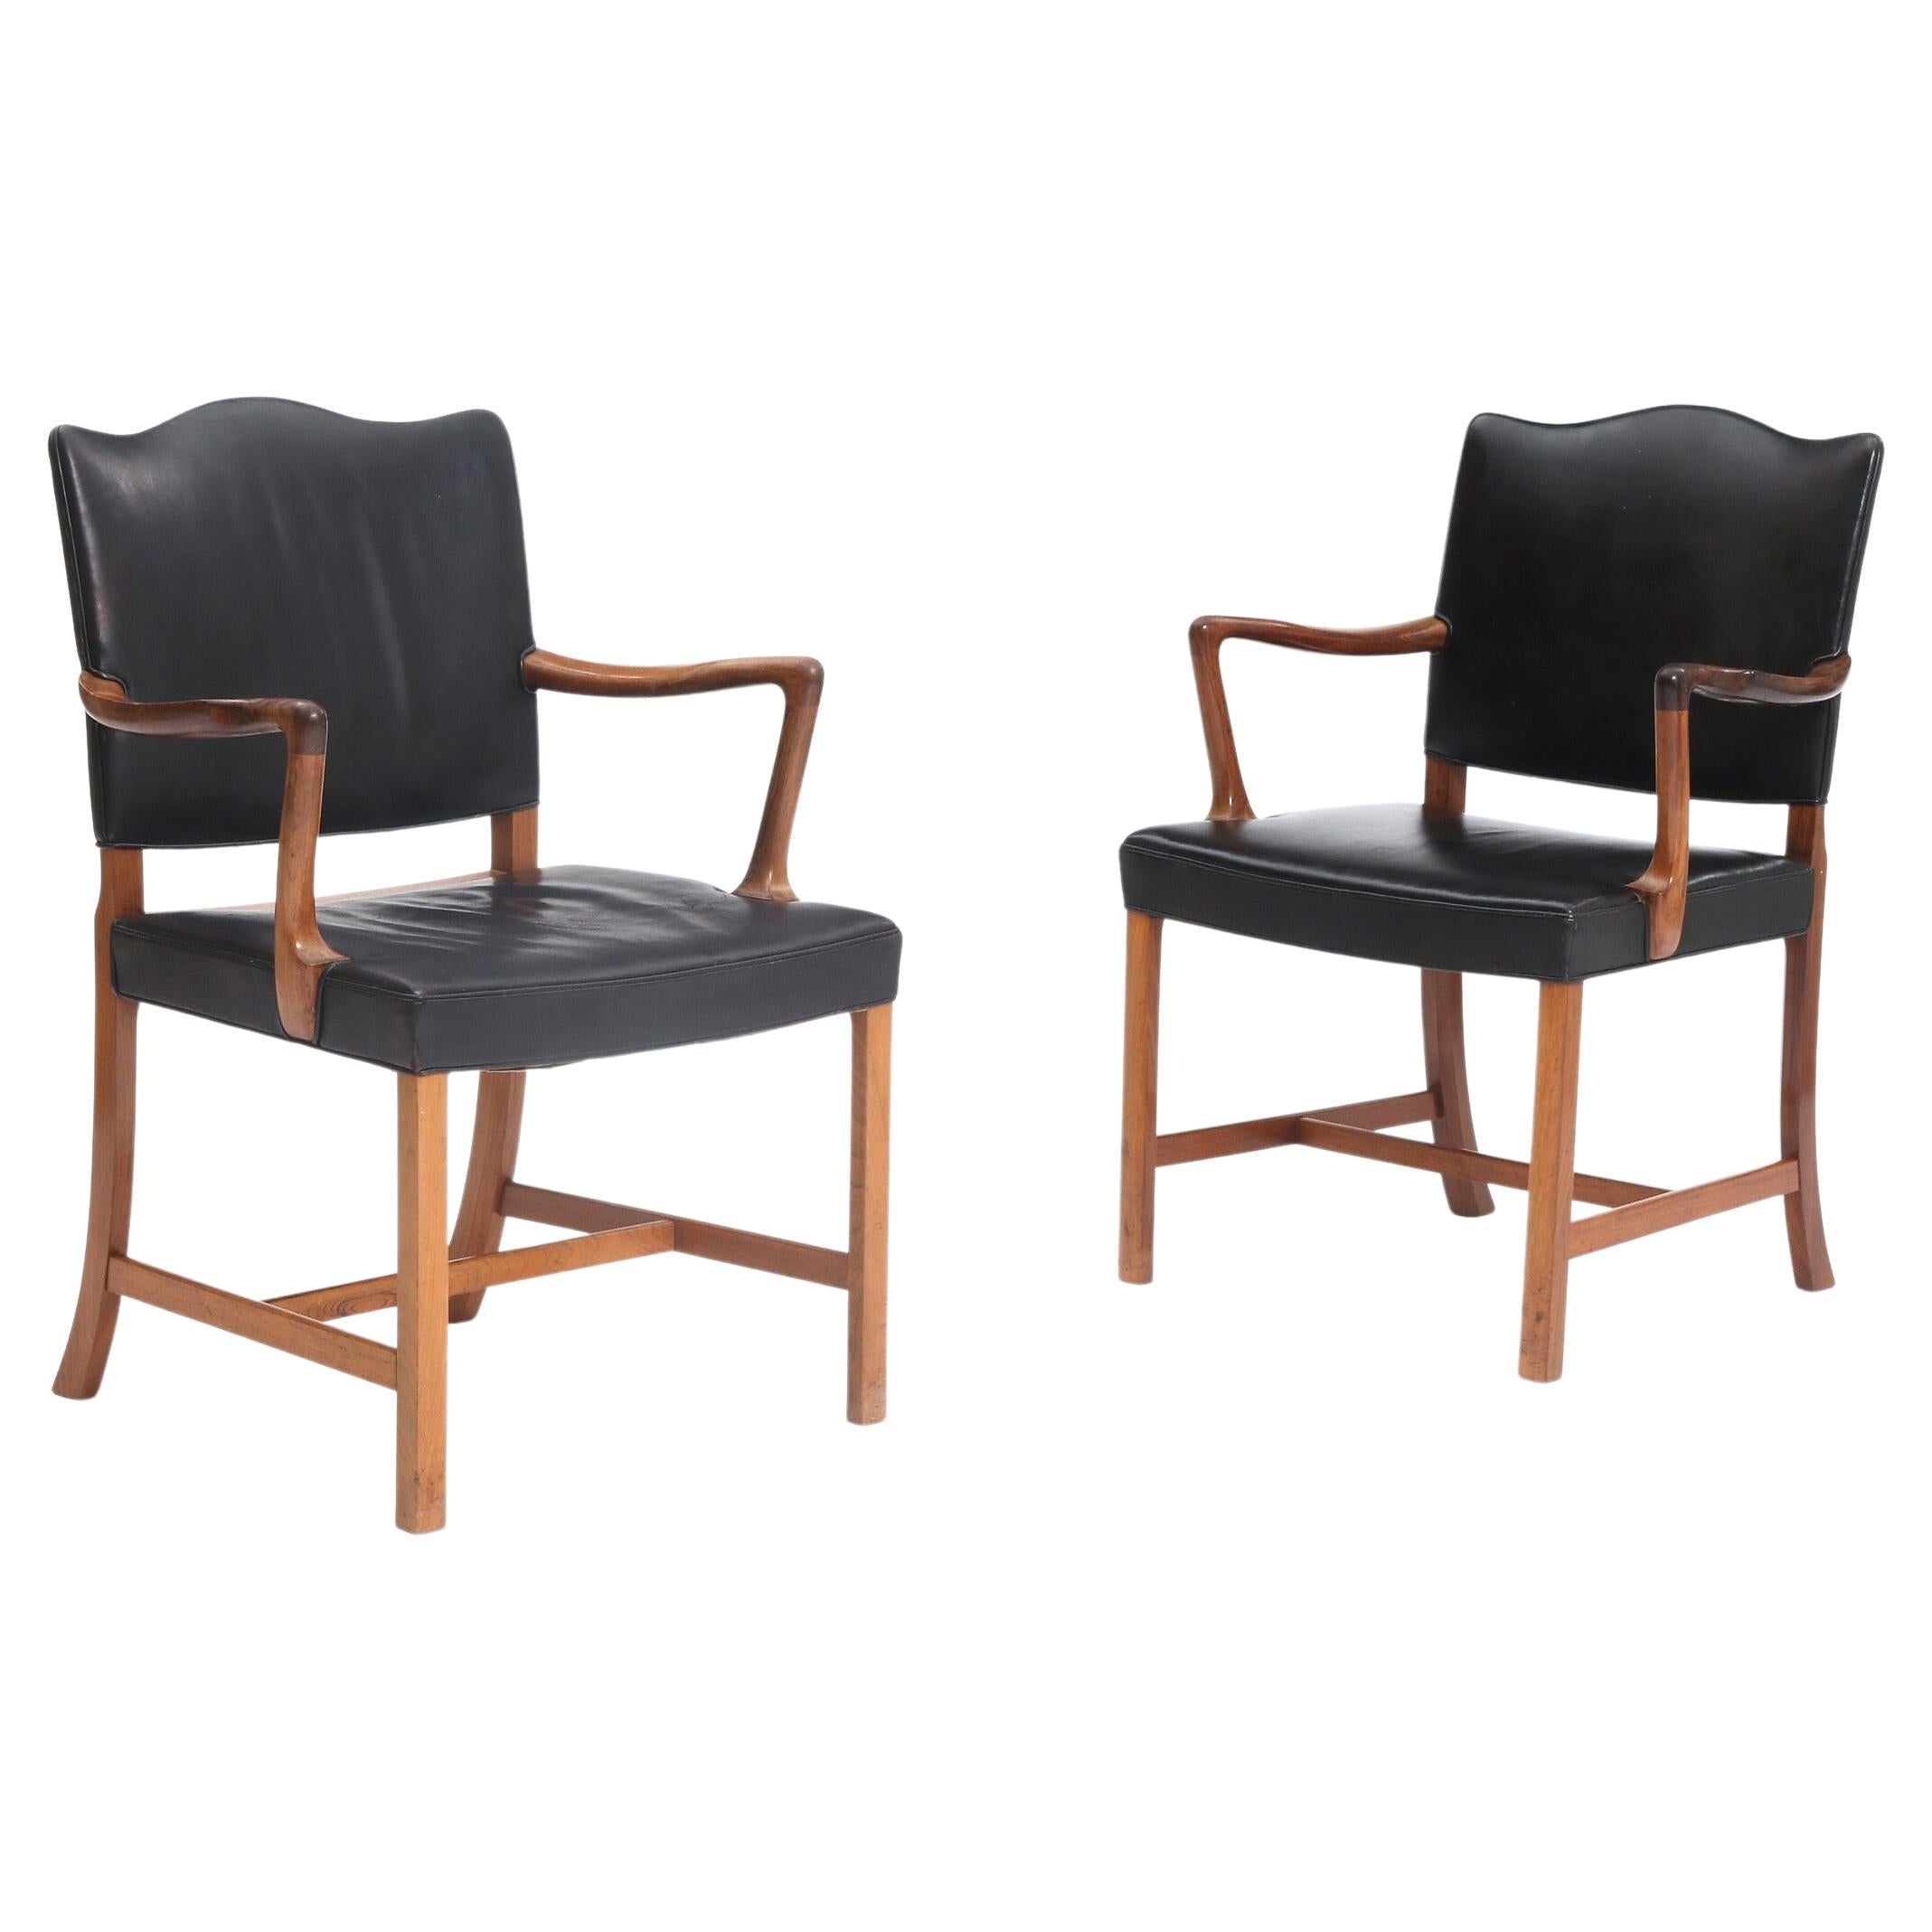 Paar Sessel aus Palisanderholz von Ole Wanscher, gepolstert mit schwarzem Leder